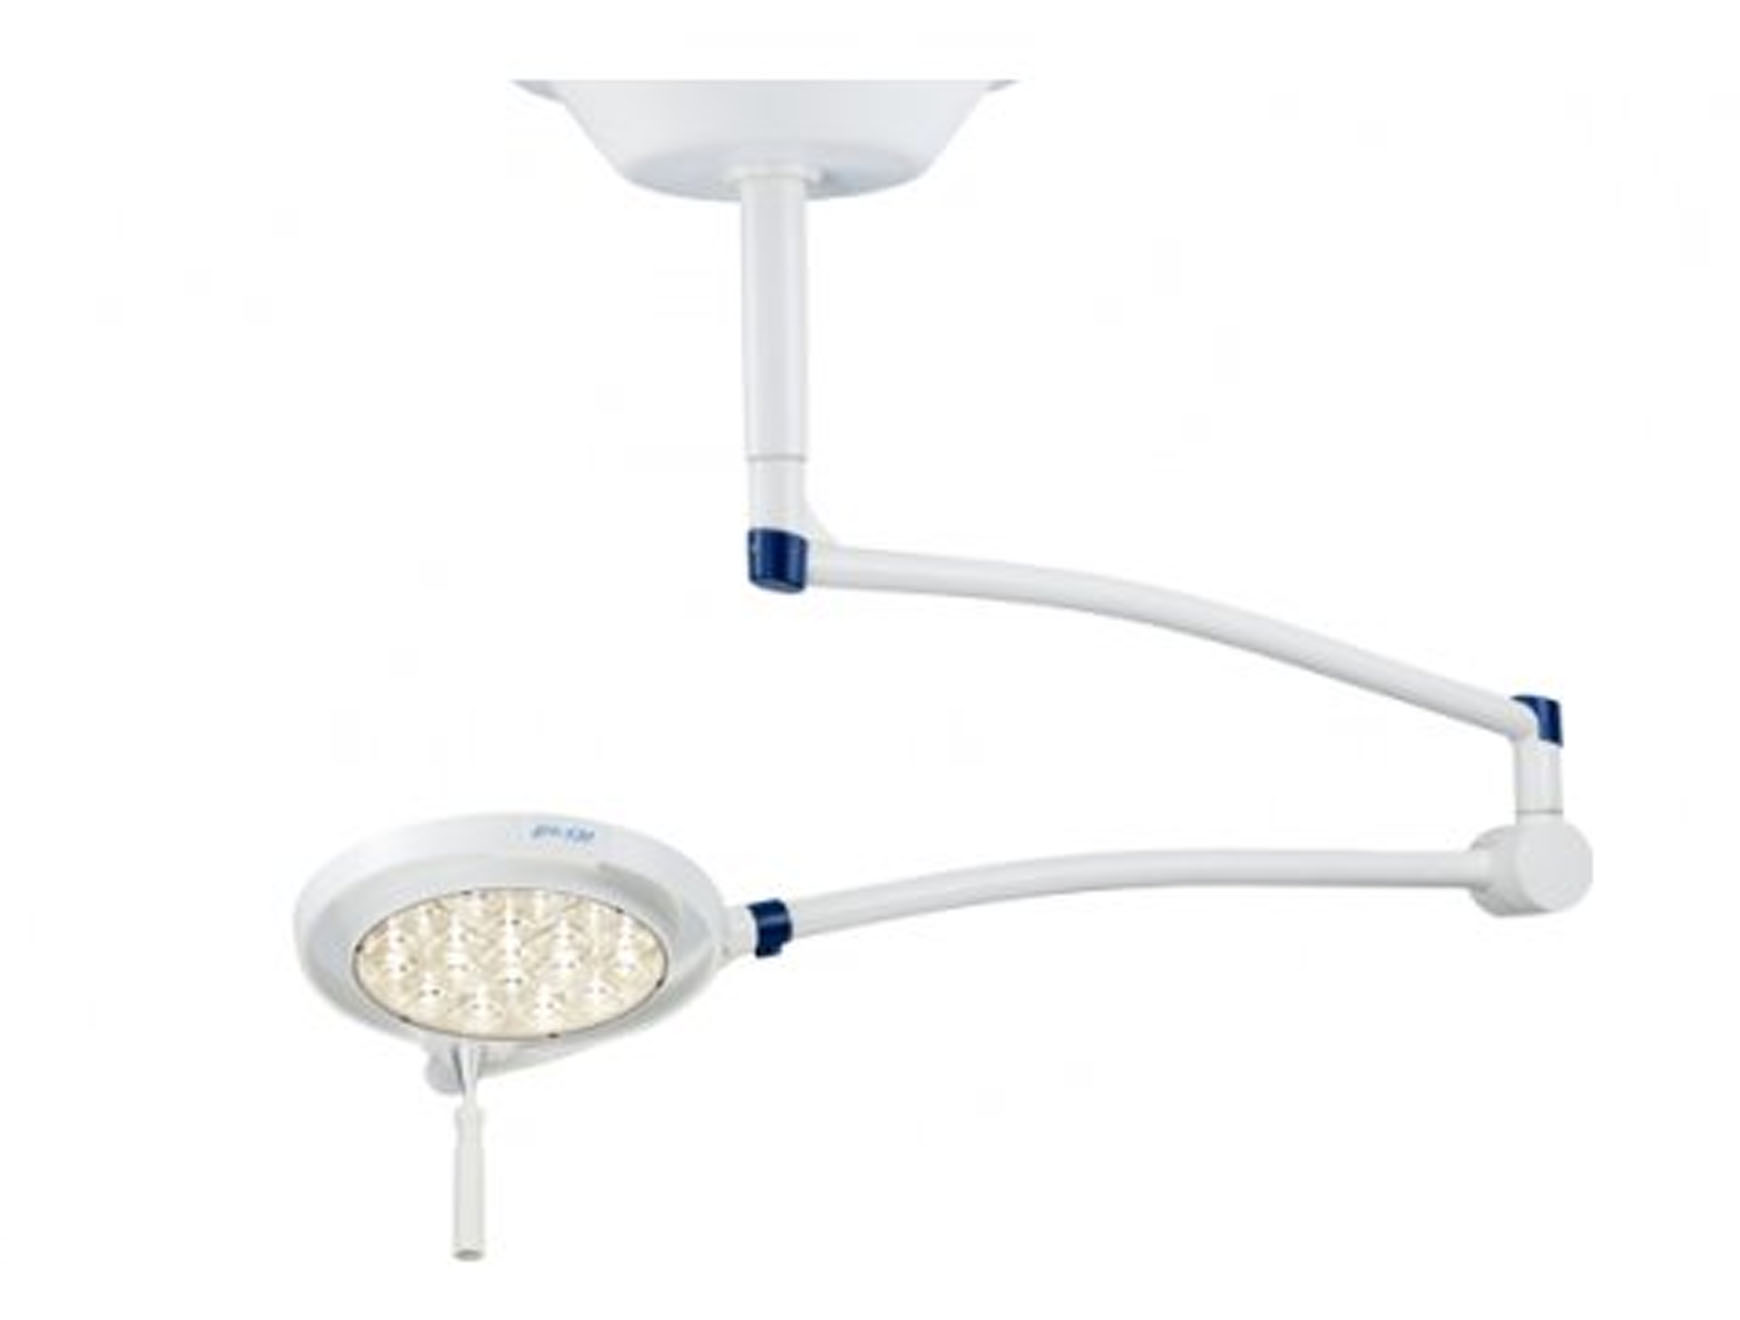 Lampe d'examen LED 130 - fixation au plafond - bras à ressort - anneau d'ancrage exclusif - 1 pc